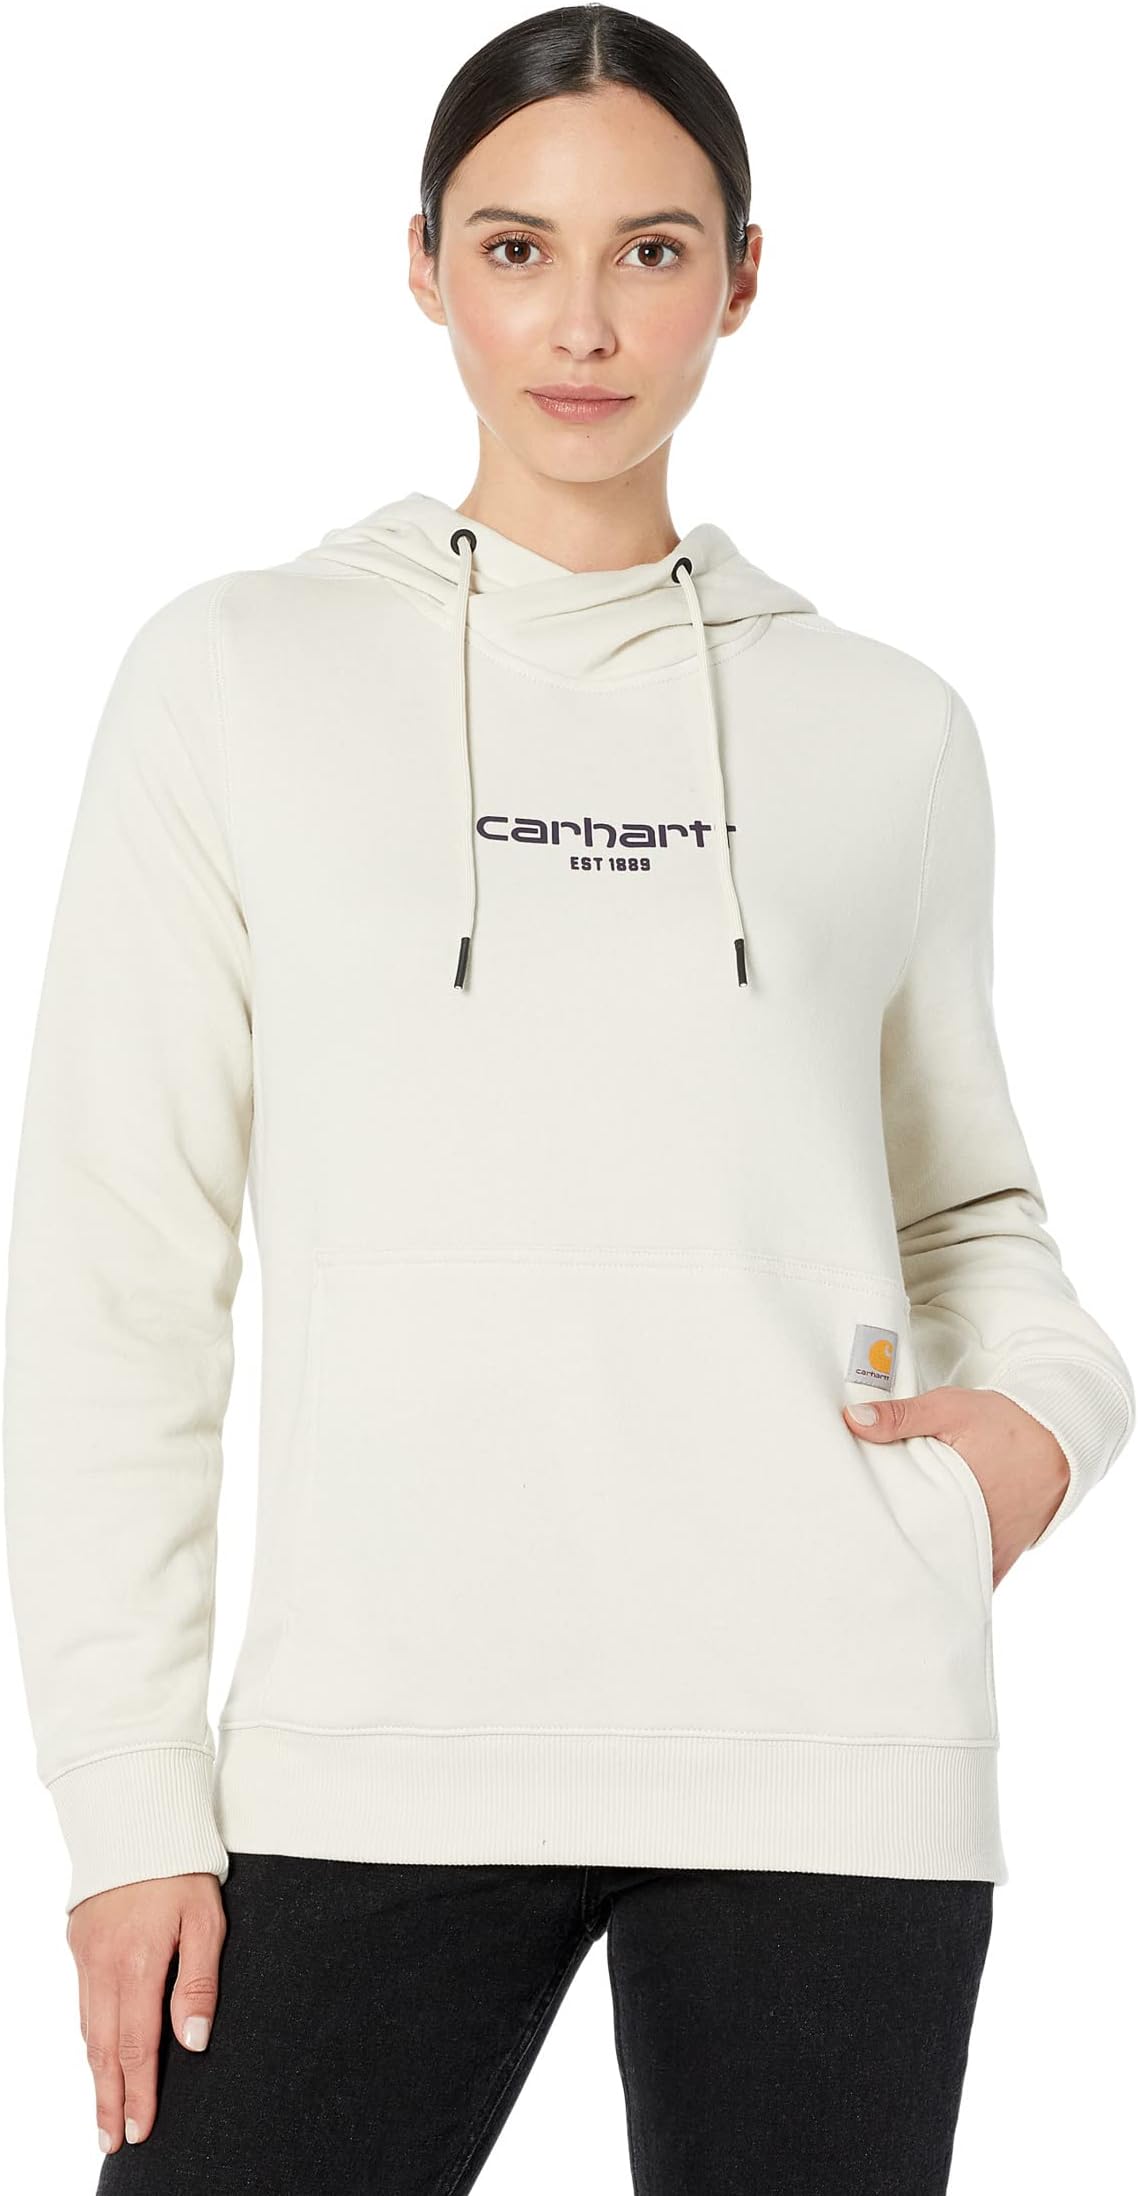 цена Легкая толстовка с капюшоном и графикой Force свободного покроя Carhartt, цвет Malt